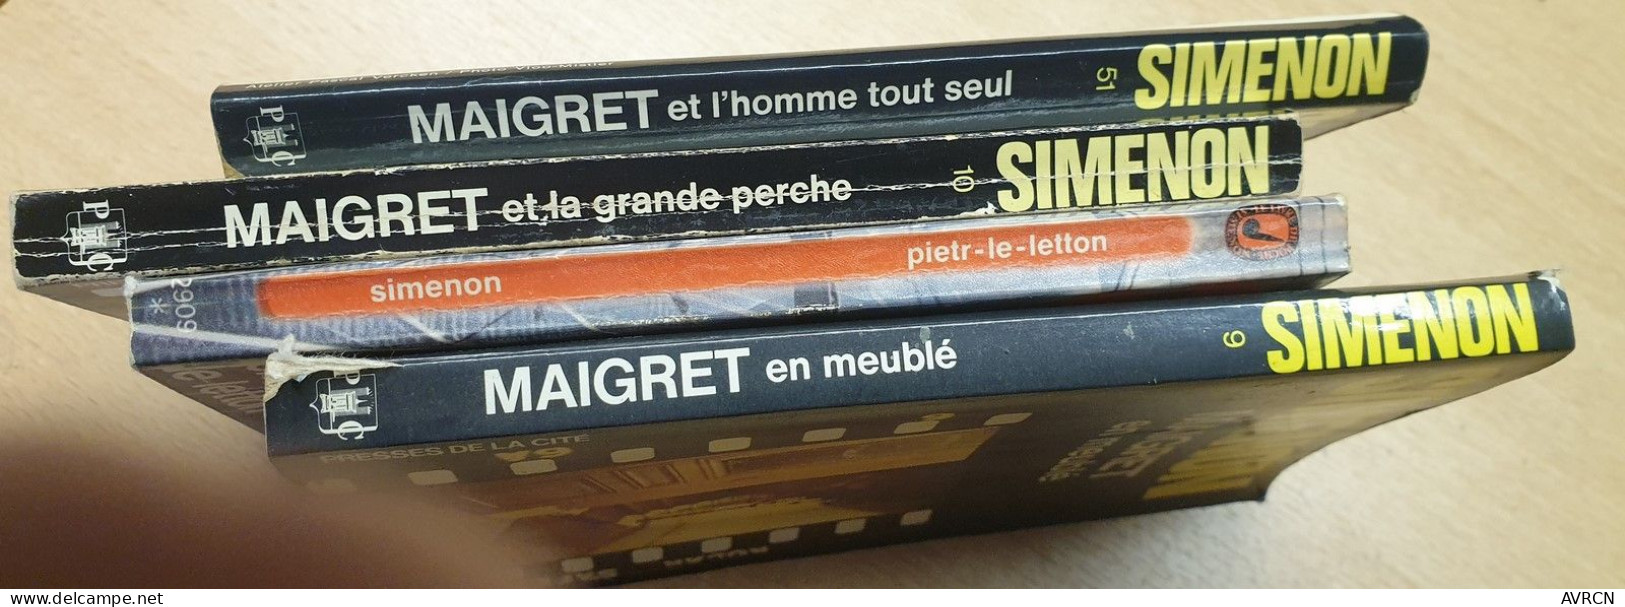 GEORGES SIMENON. LE COMMISSAIRE MAIGRET. 16 VOLUMES.